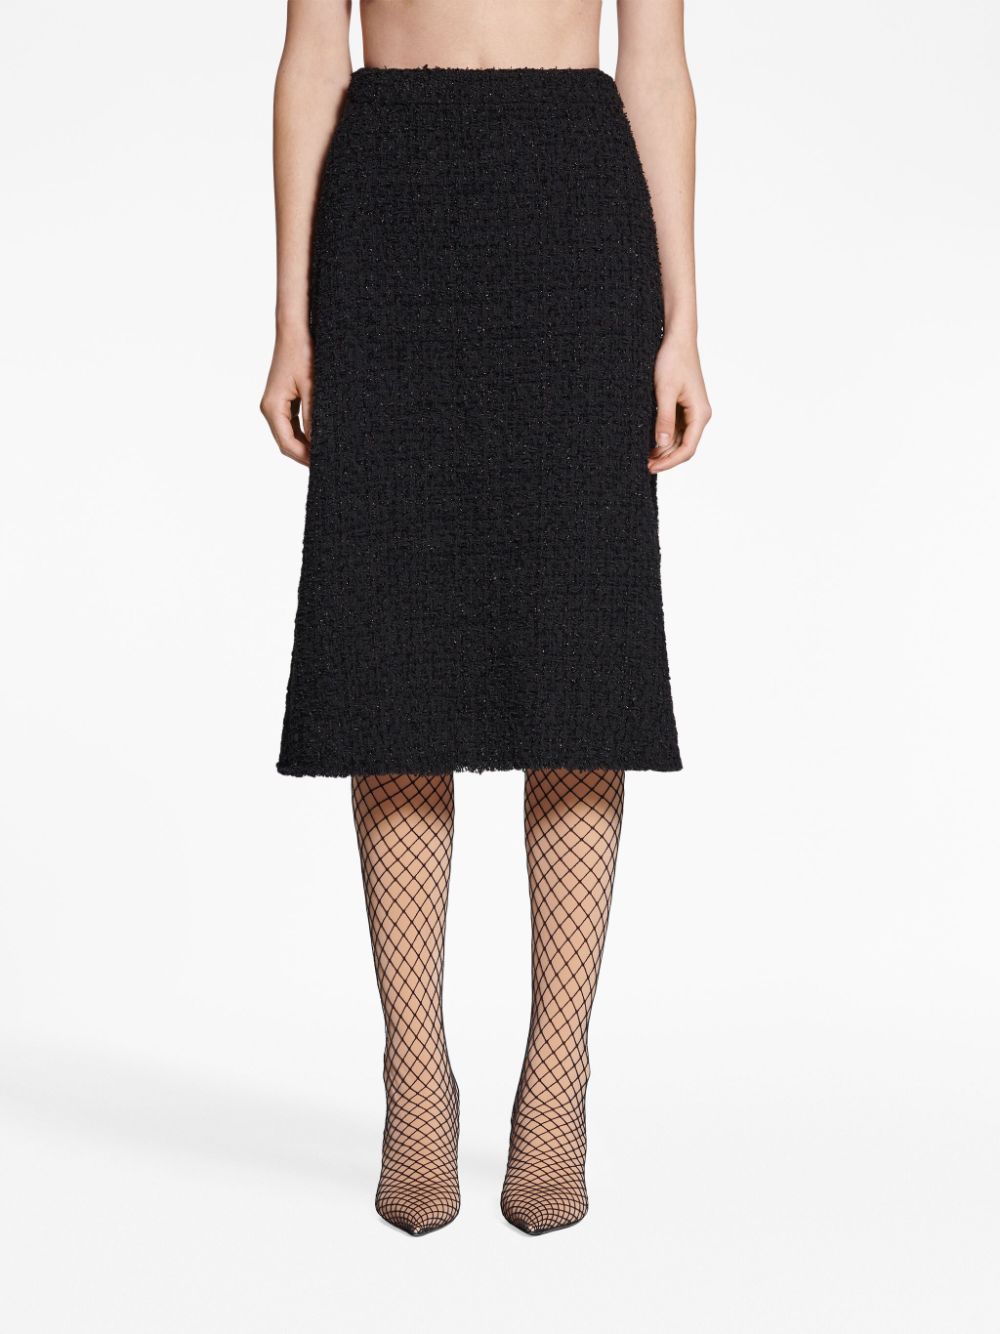 BALENCIAGA Black Tweed A-Line Midi Skirt for Women - Conscious Collection